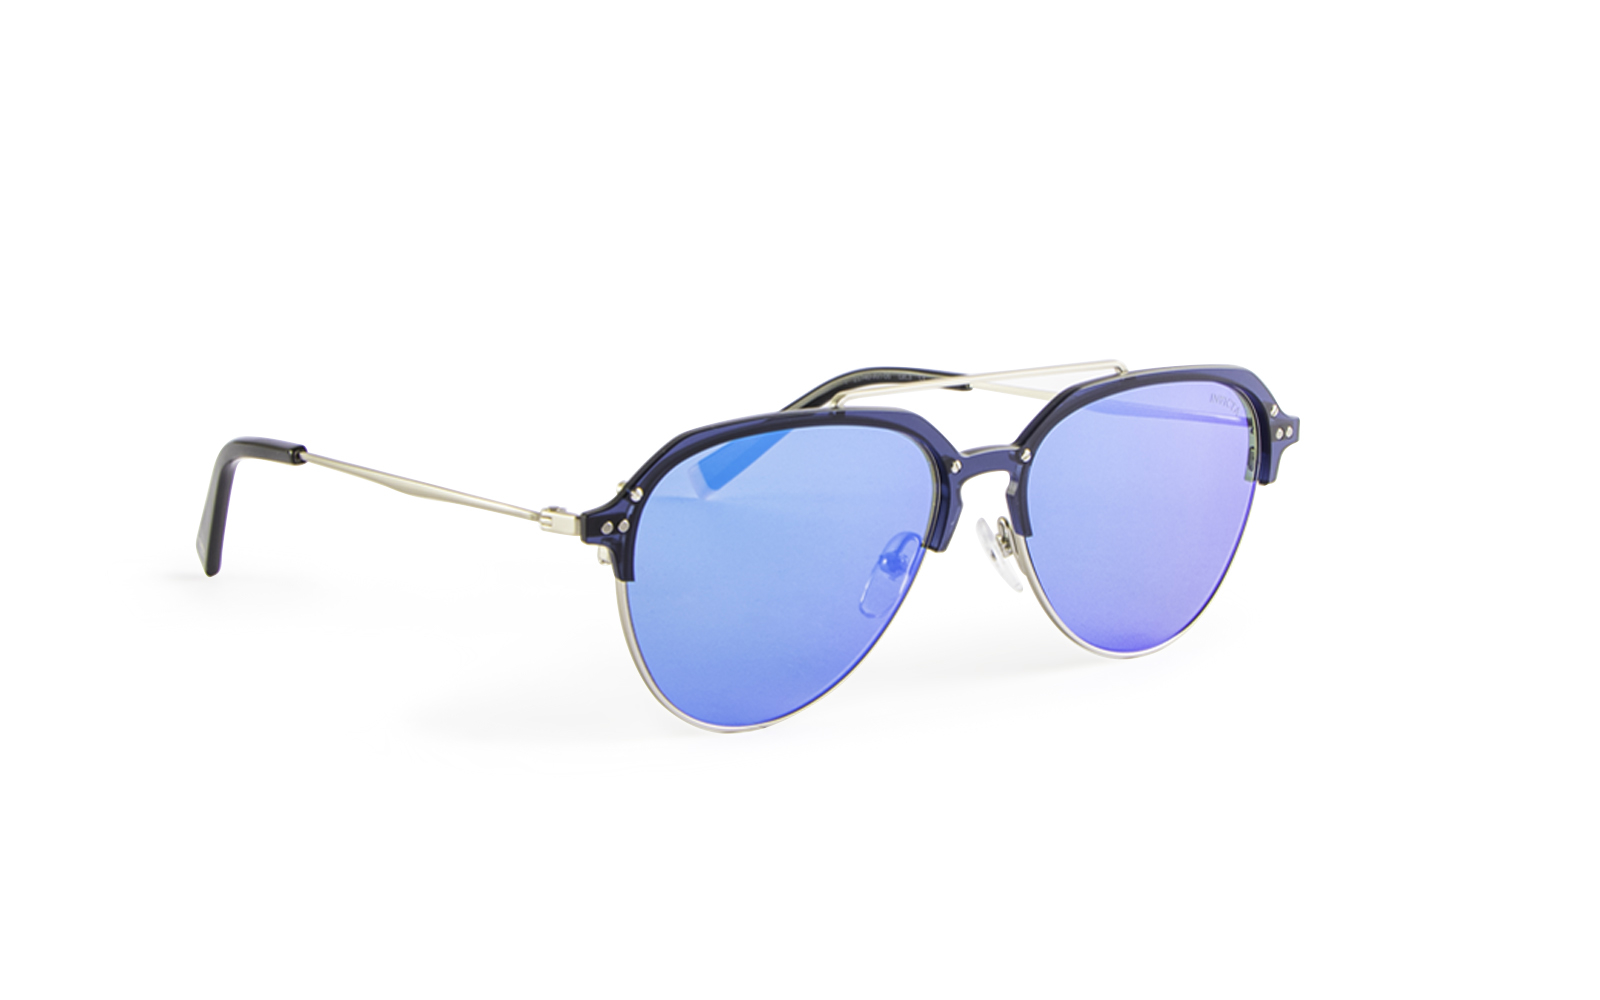 Invicta Men's Aviator Clubmaster Style Sunglasses, Blue (21740-AVI-06)